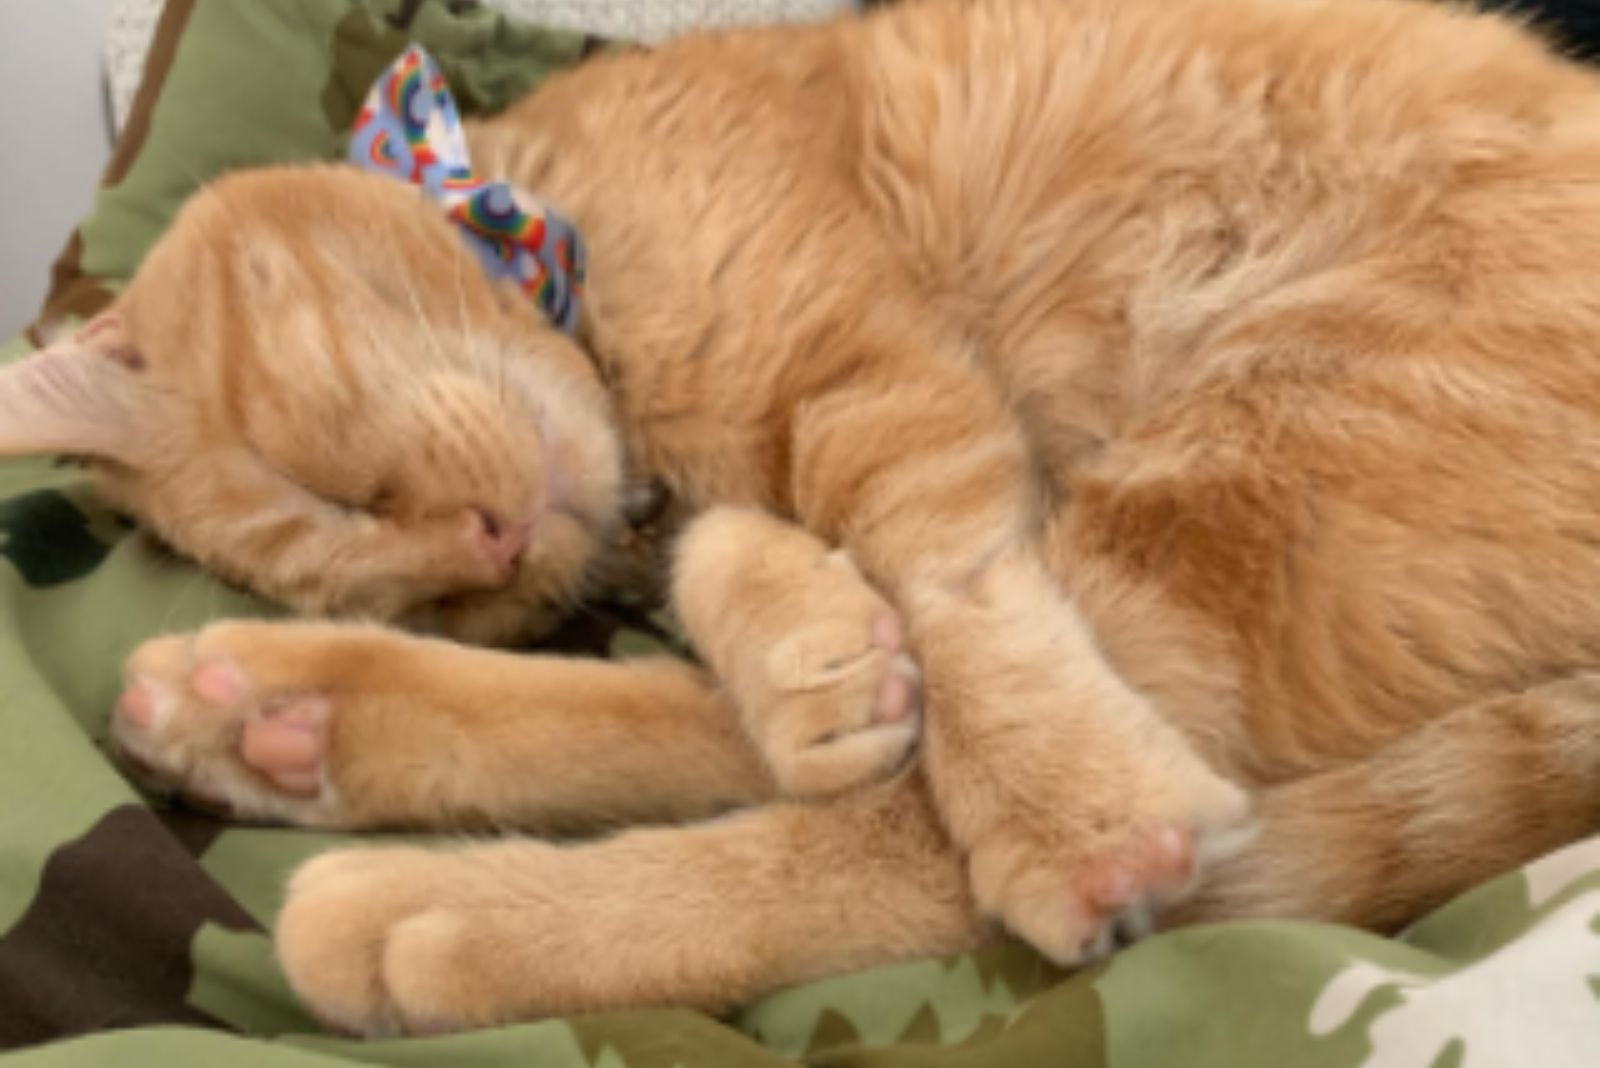 ginger cat sleeping